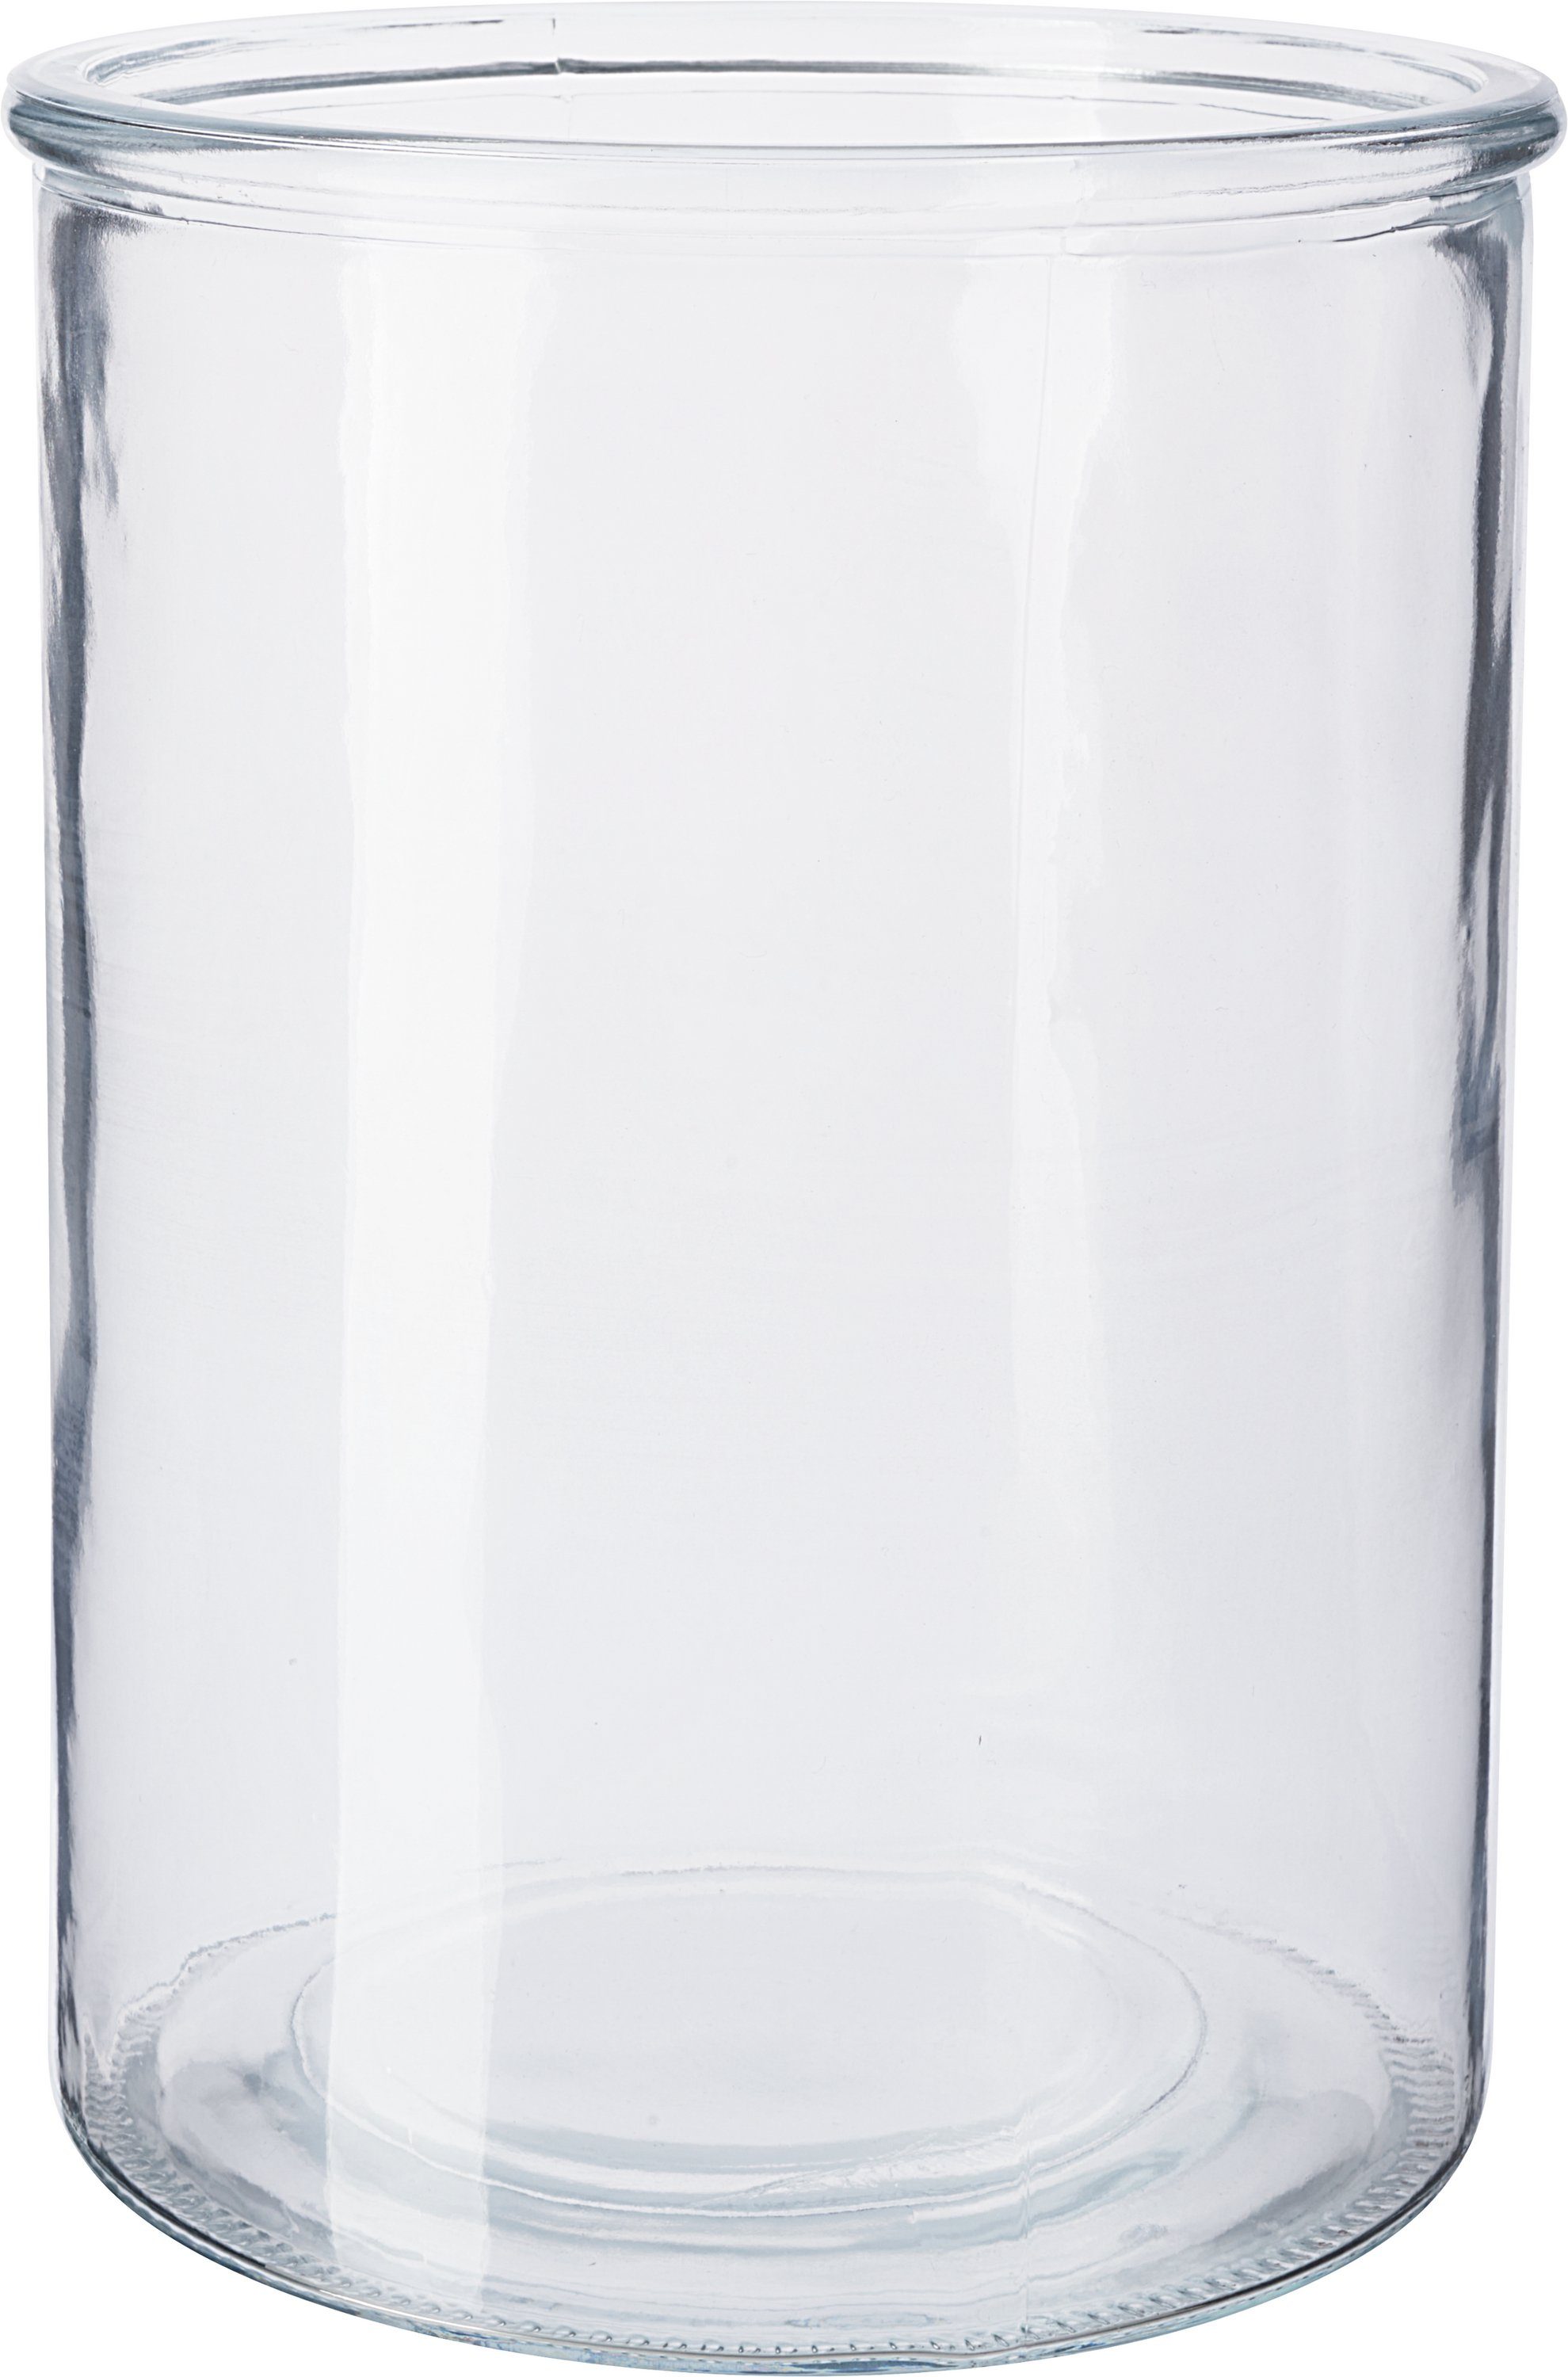 VBS Windlicht Glaszylinder, Ø 15,5 cm